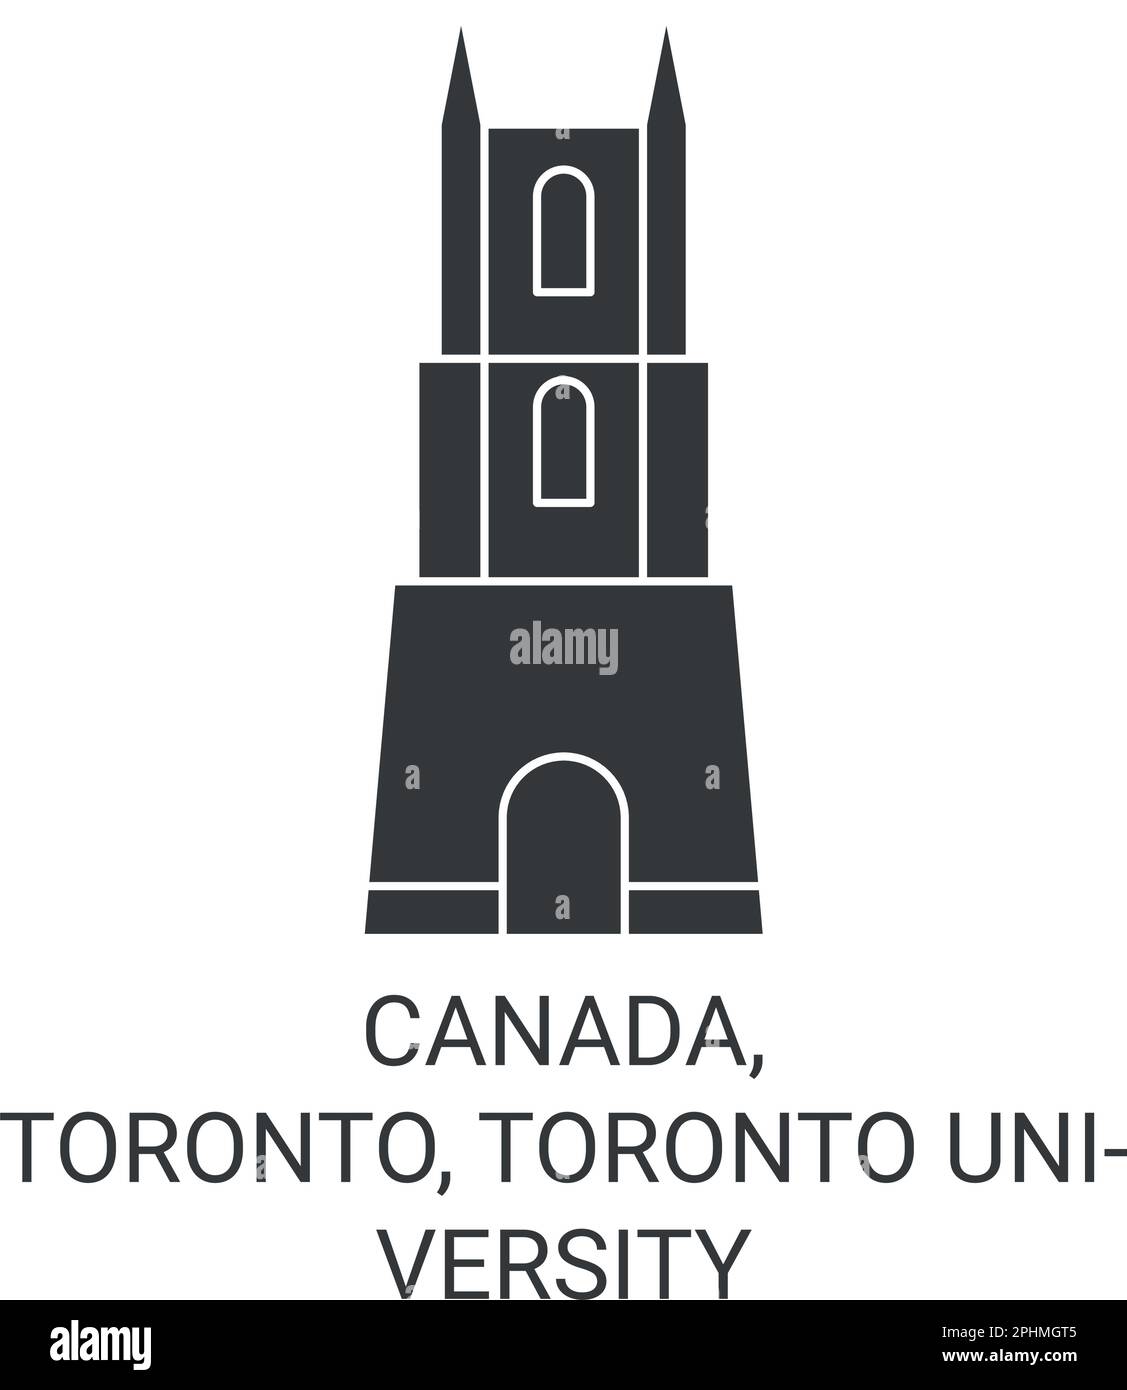 Canada, Toronto, Toronto Université de voyage illustration vectorielle historique Illustration de Vecteur